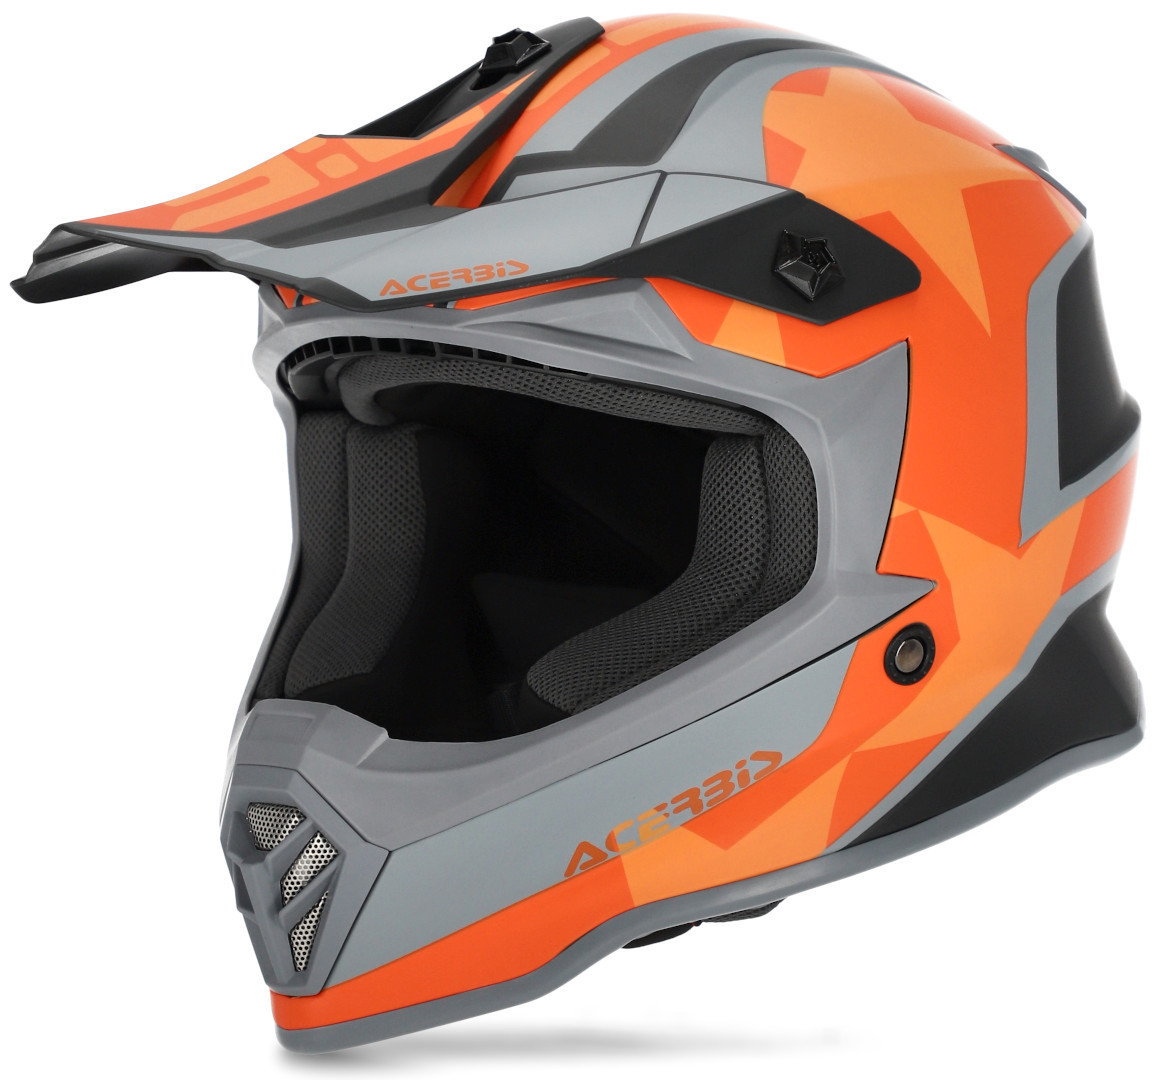 Image of Acerbis Steel Stars Casco motocross per bambini, grigio-arancione, dimensione M